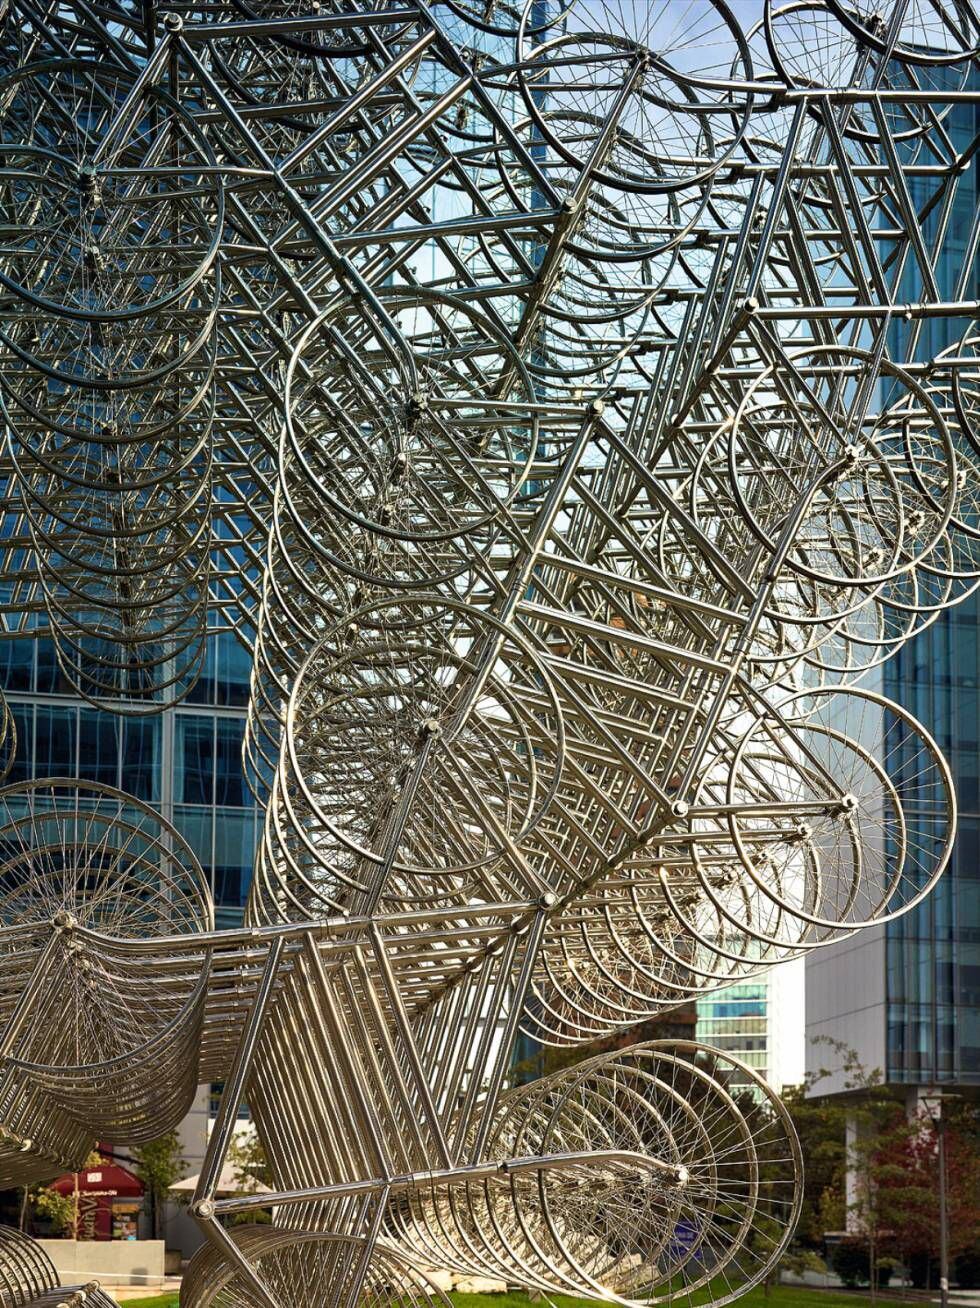 ‘Forever’ (2014), instalação formada por 1.254 bicicletas, em frente à Fundación CorpArtes de Santiago do Chile. Faz parte de Inoculación, uma exposição da obra de Ai Weiwei que vai até 9 de setembro.